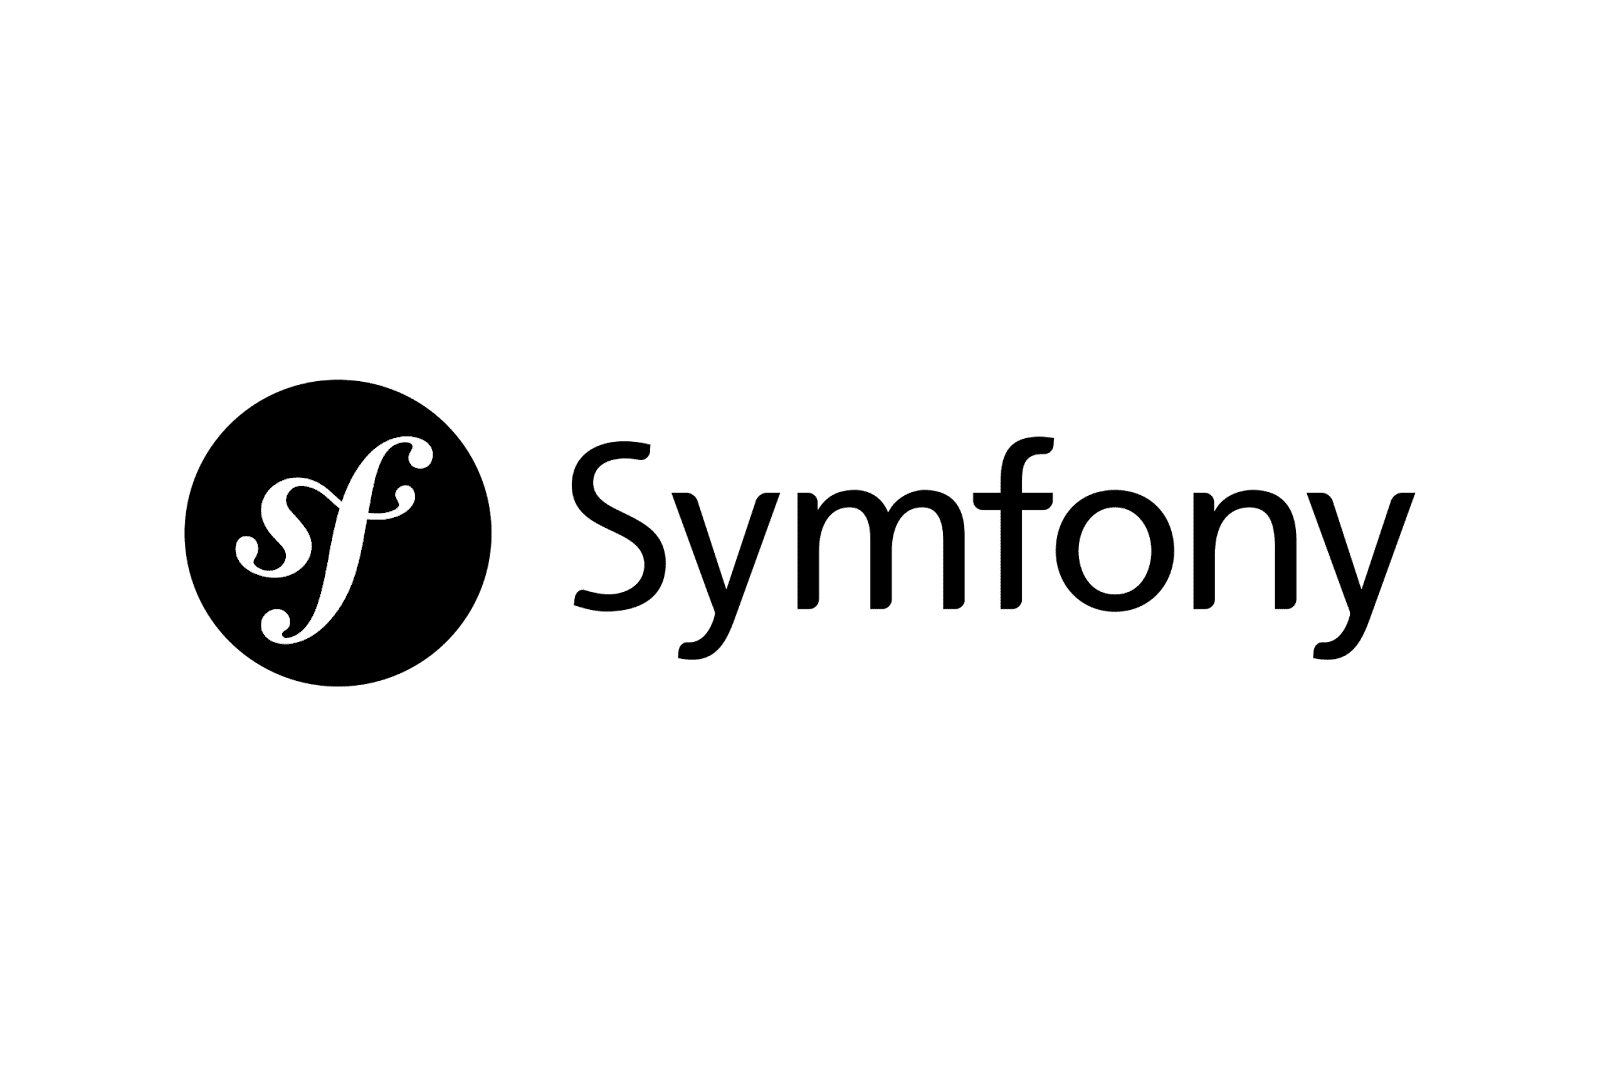 Le logo Symfony.